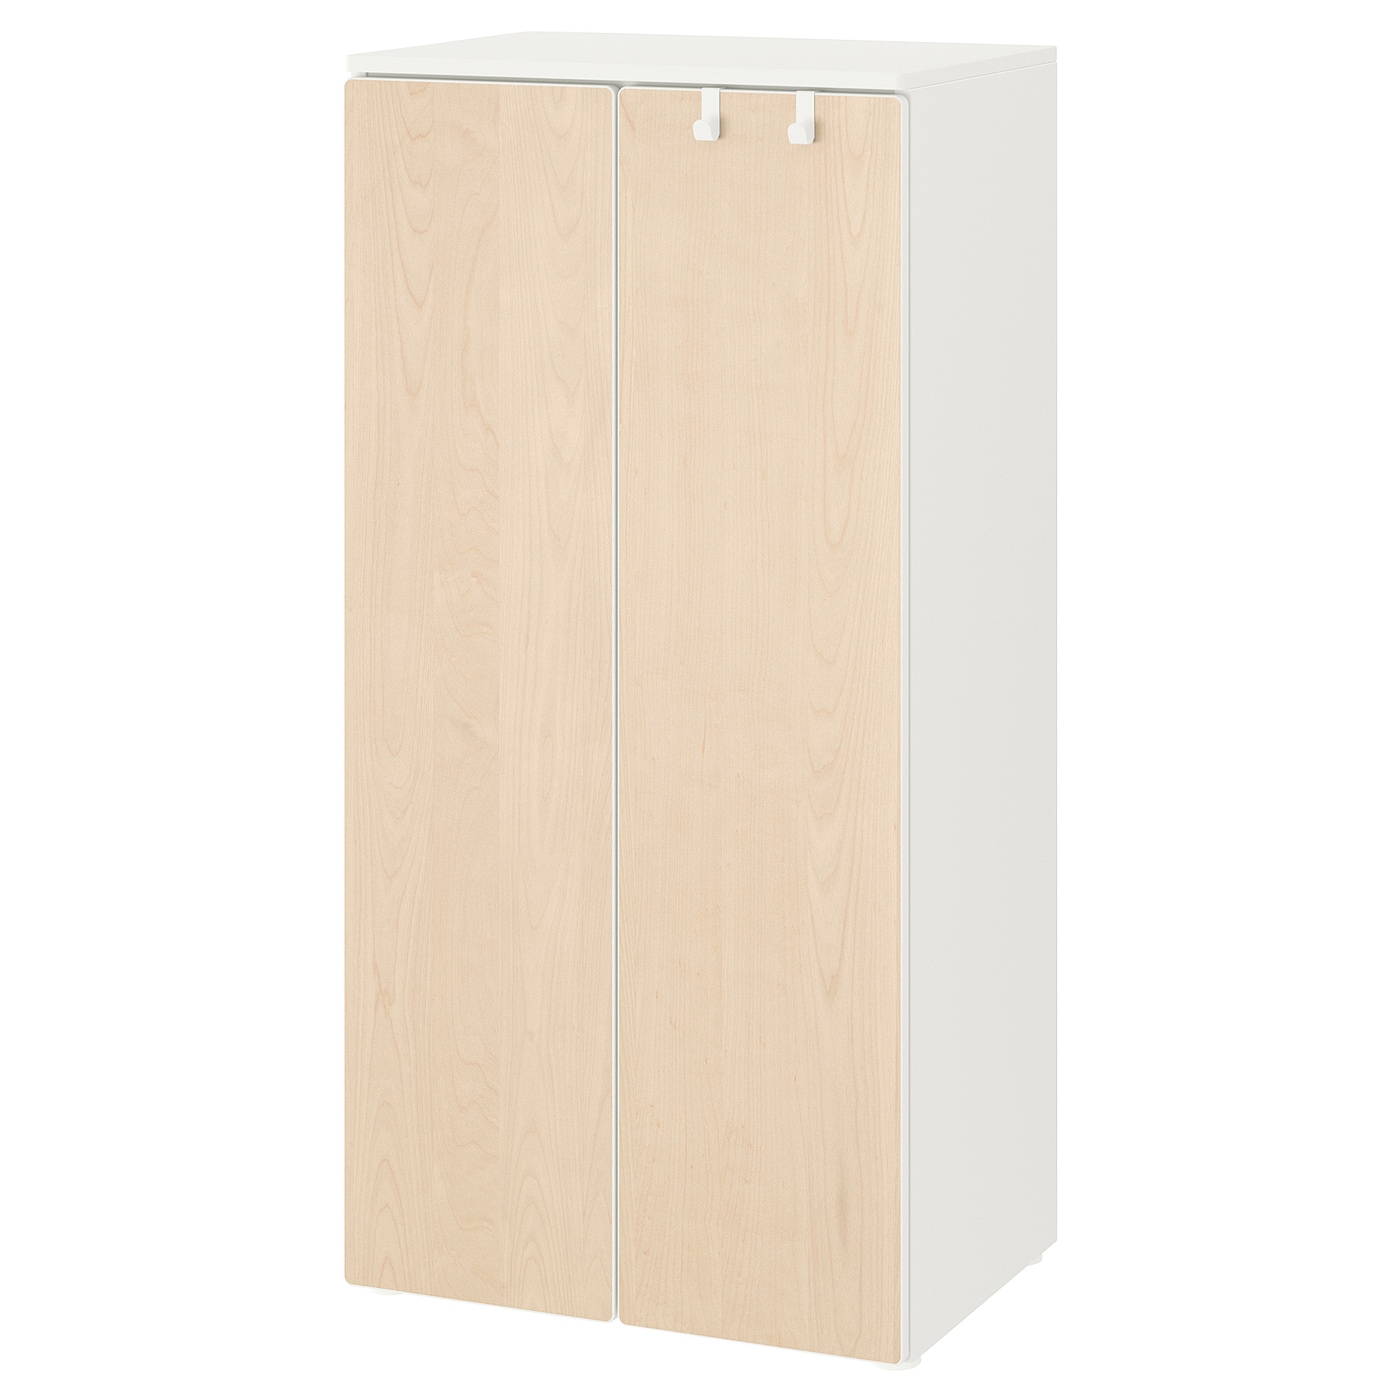 Шкаф детский - IKEA SMÅSTAD/SMASTAD, 60x42x123 см, белый/светло-коричневый, СМОСТАД ИКЕА